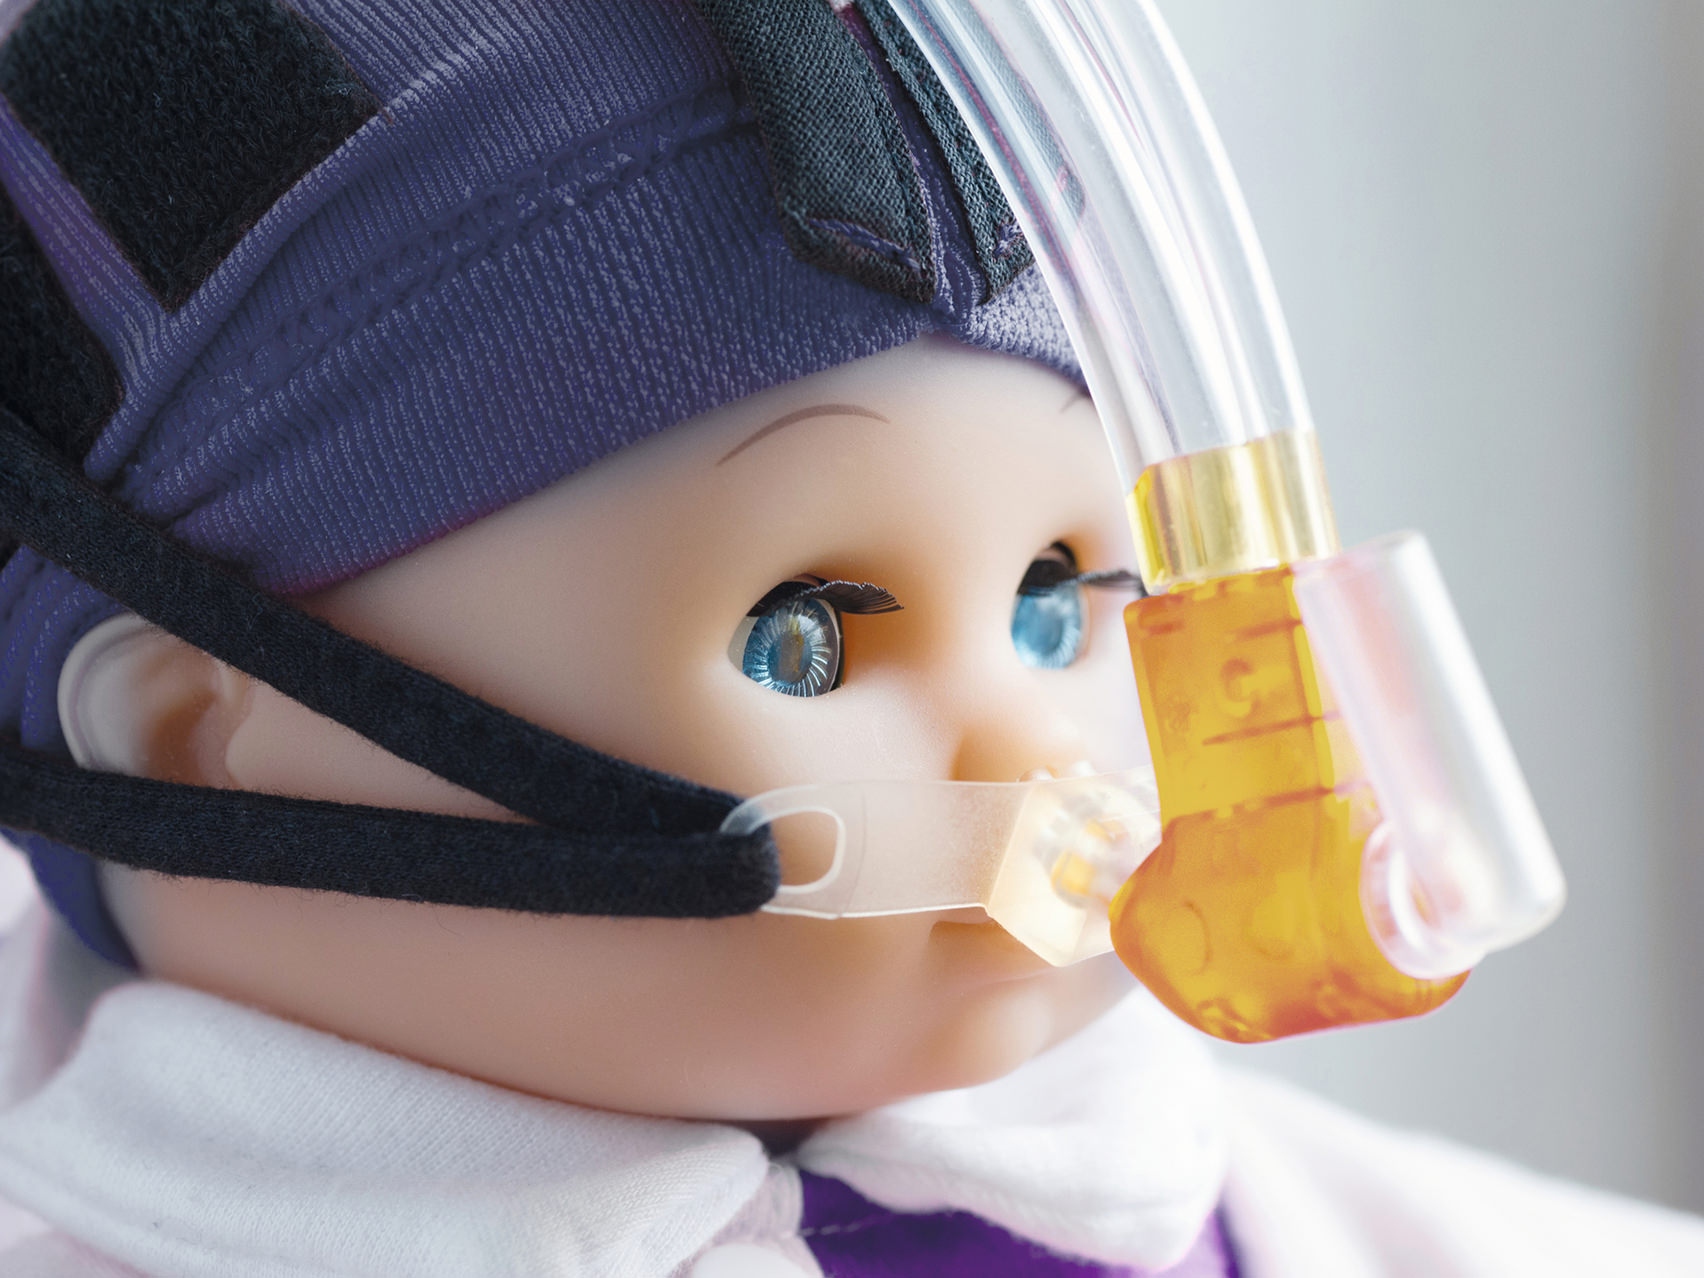 Immagine ravvicinata del viso di una bambola con una maschera respiratoria.